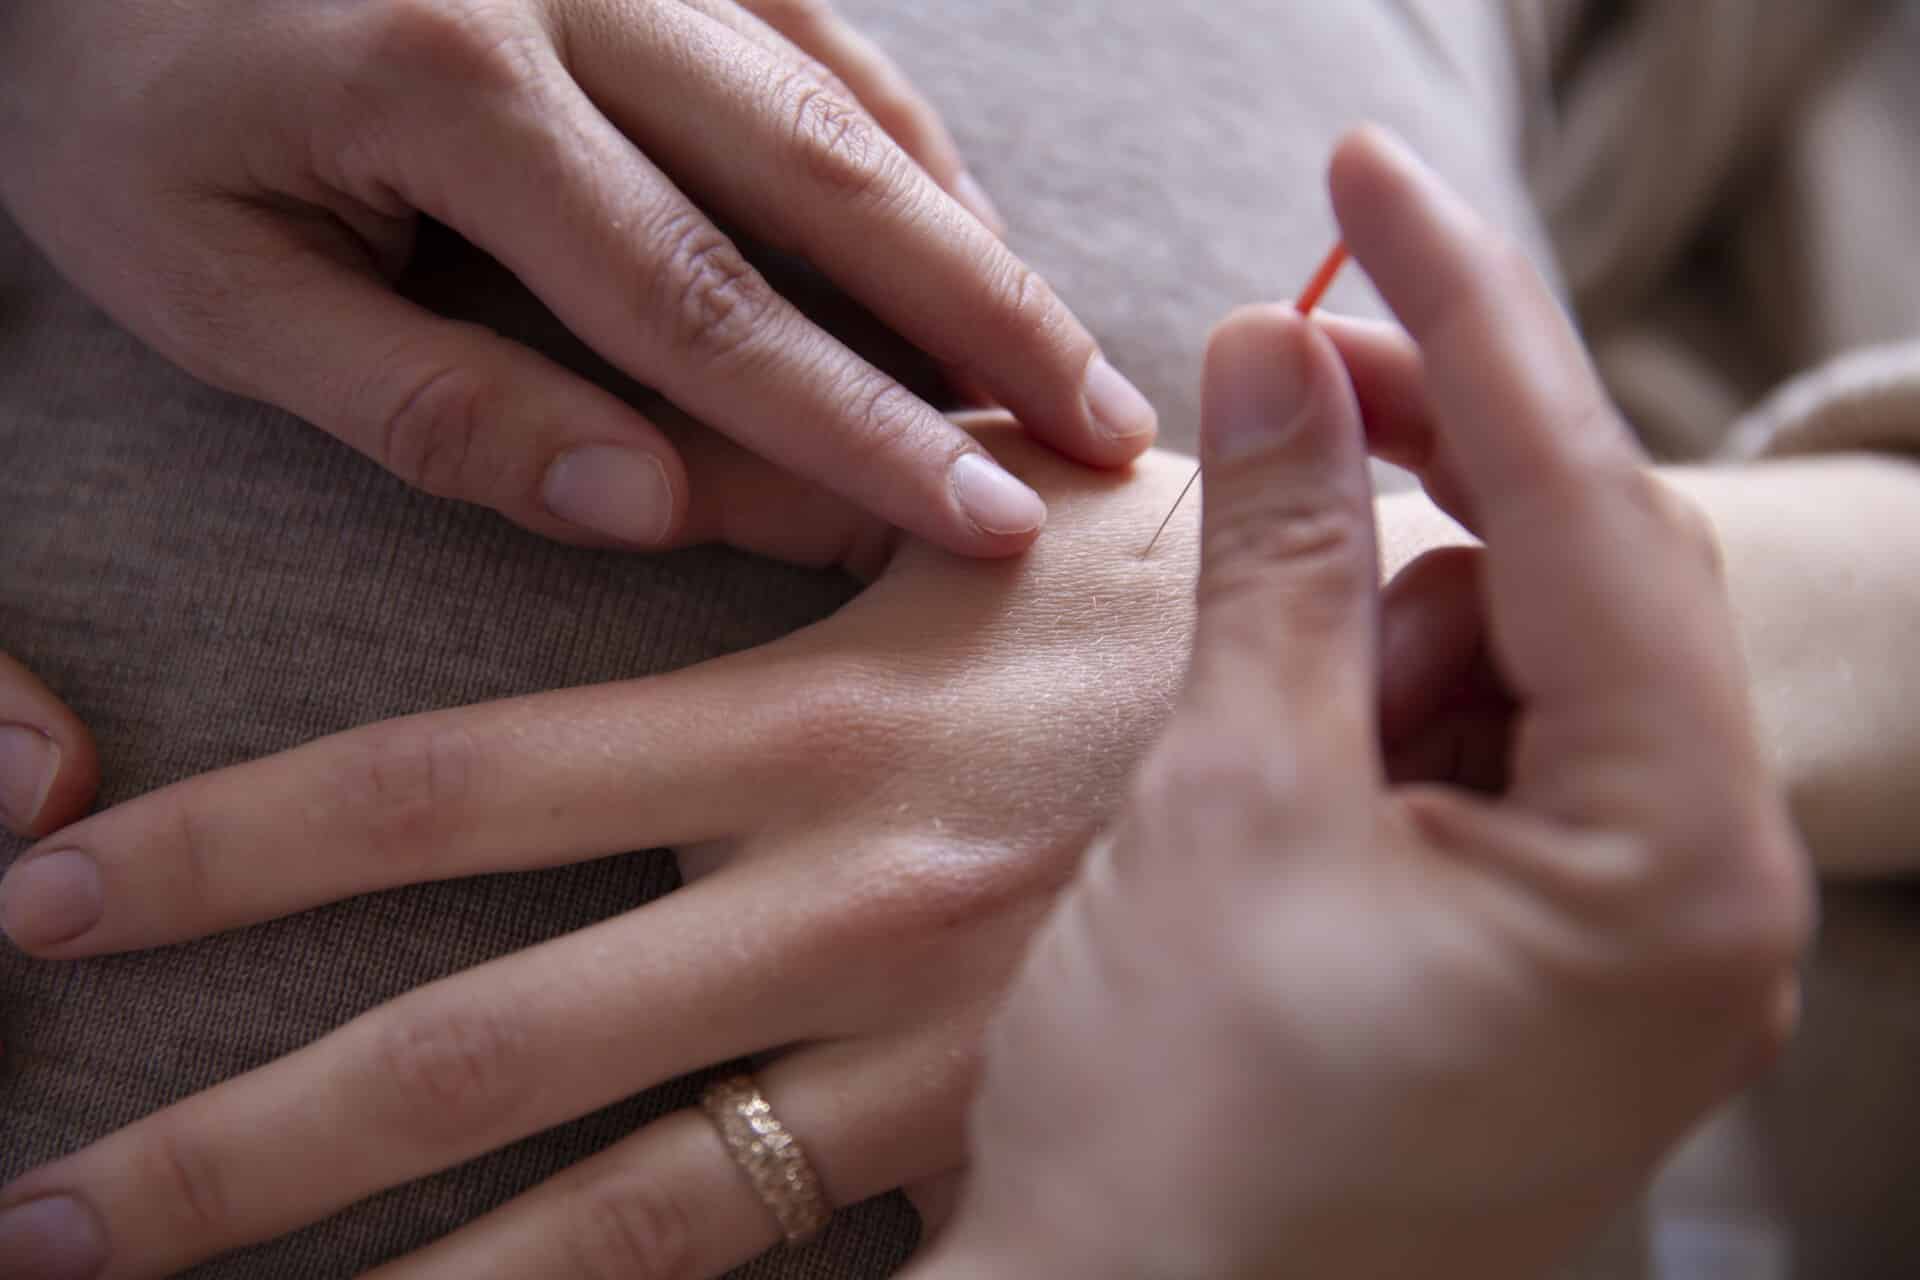 Styrk din fertilitet med akupunktur mod barnløshed